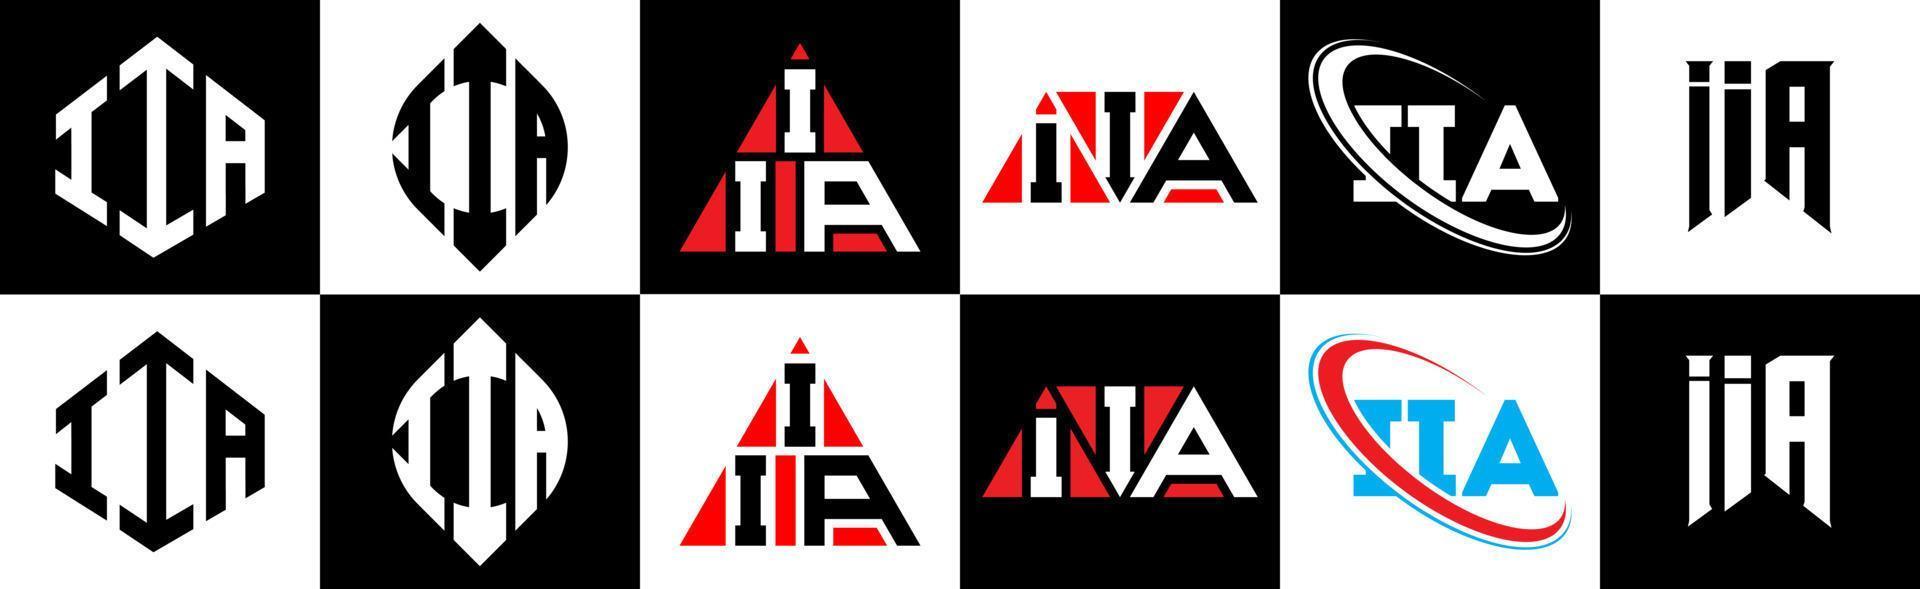 création de logo de lettre iia en six styles. iia polygone, cercle, triangle, hexagone, style plat et simple avec logo de lettre de variation de couleur noir et blanc dans un plan de travail. iia logo minimaliste et classique vecteur